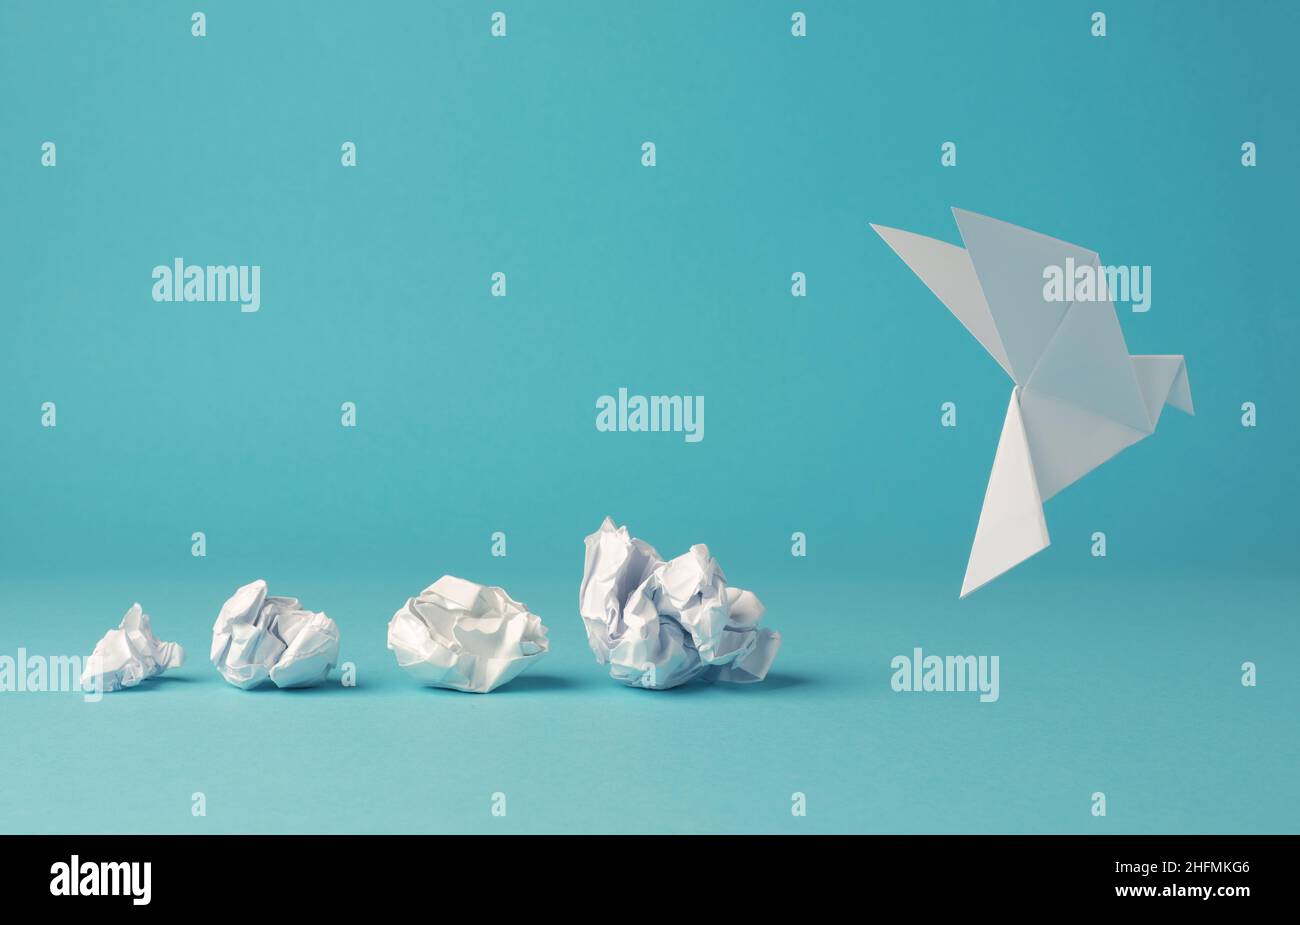 Zerknitterte Papierkugeln mit Origami-Papiertaube, Friedens-, Freiheit- oder Chancenkonzept auf blauem Hintergrund Stockfoto